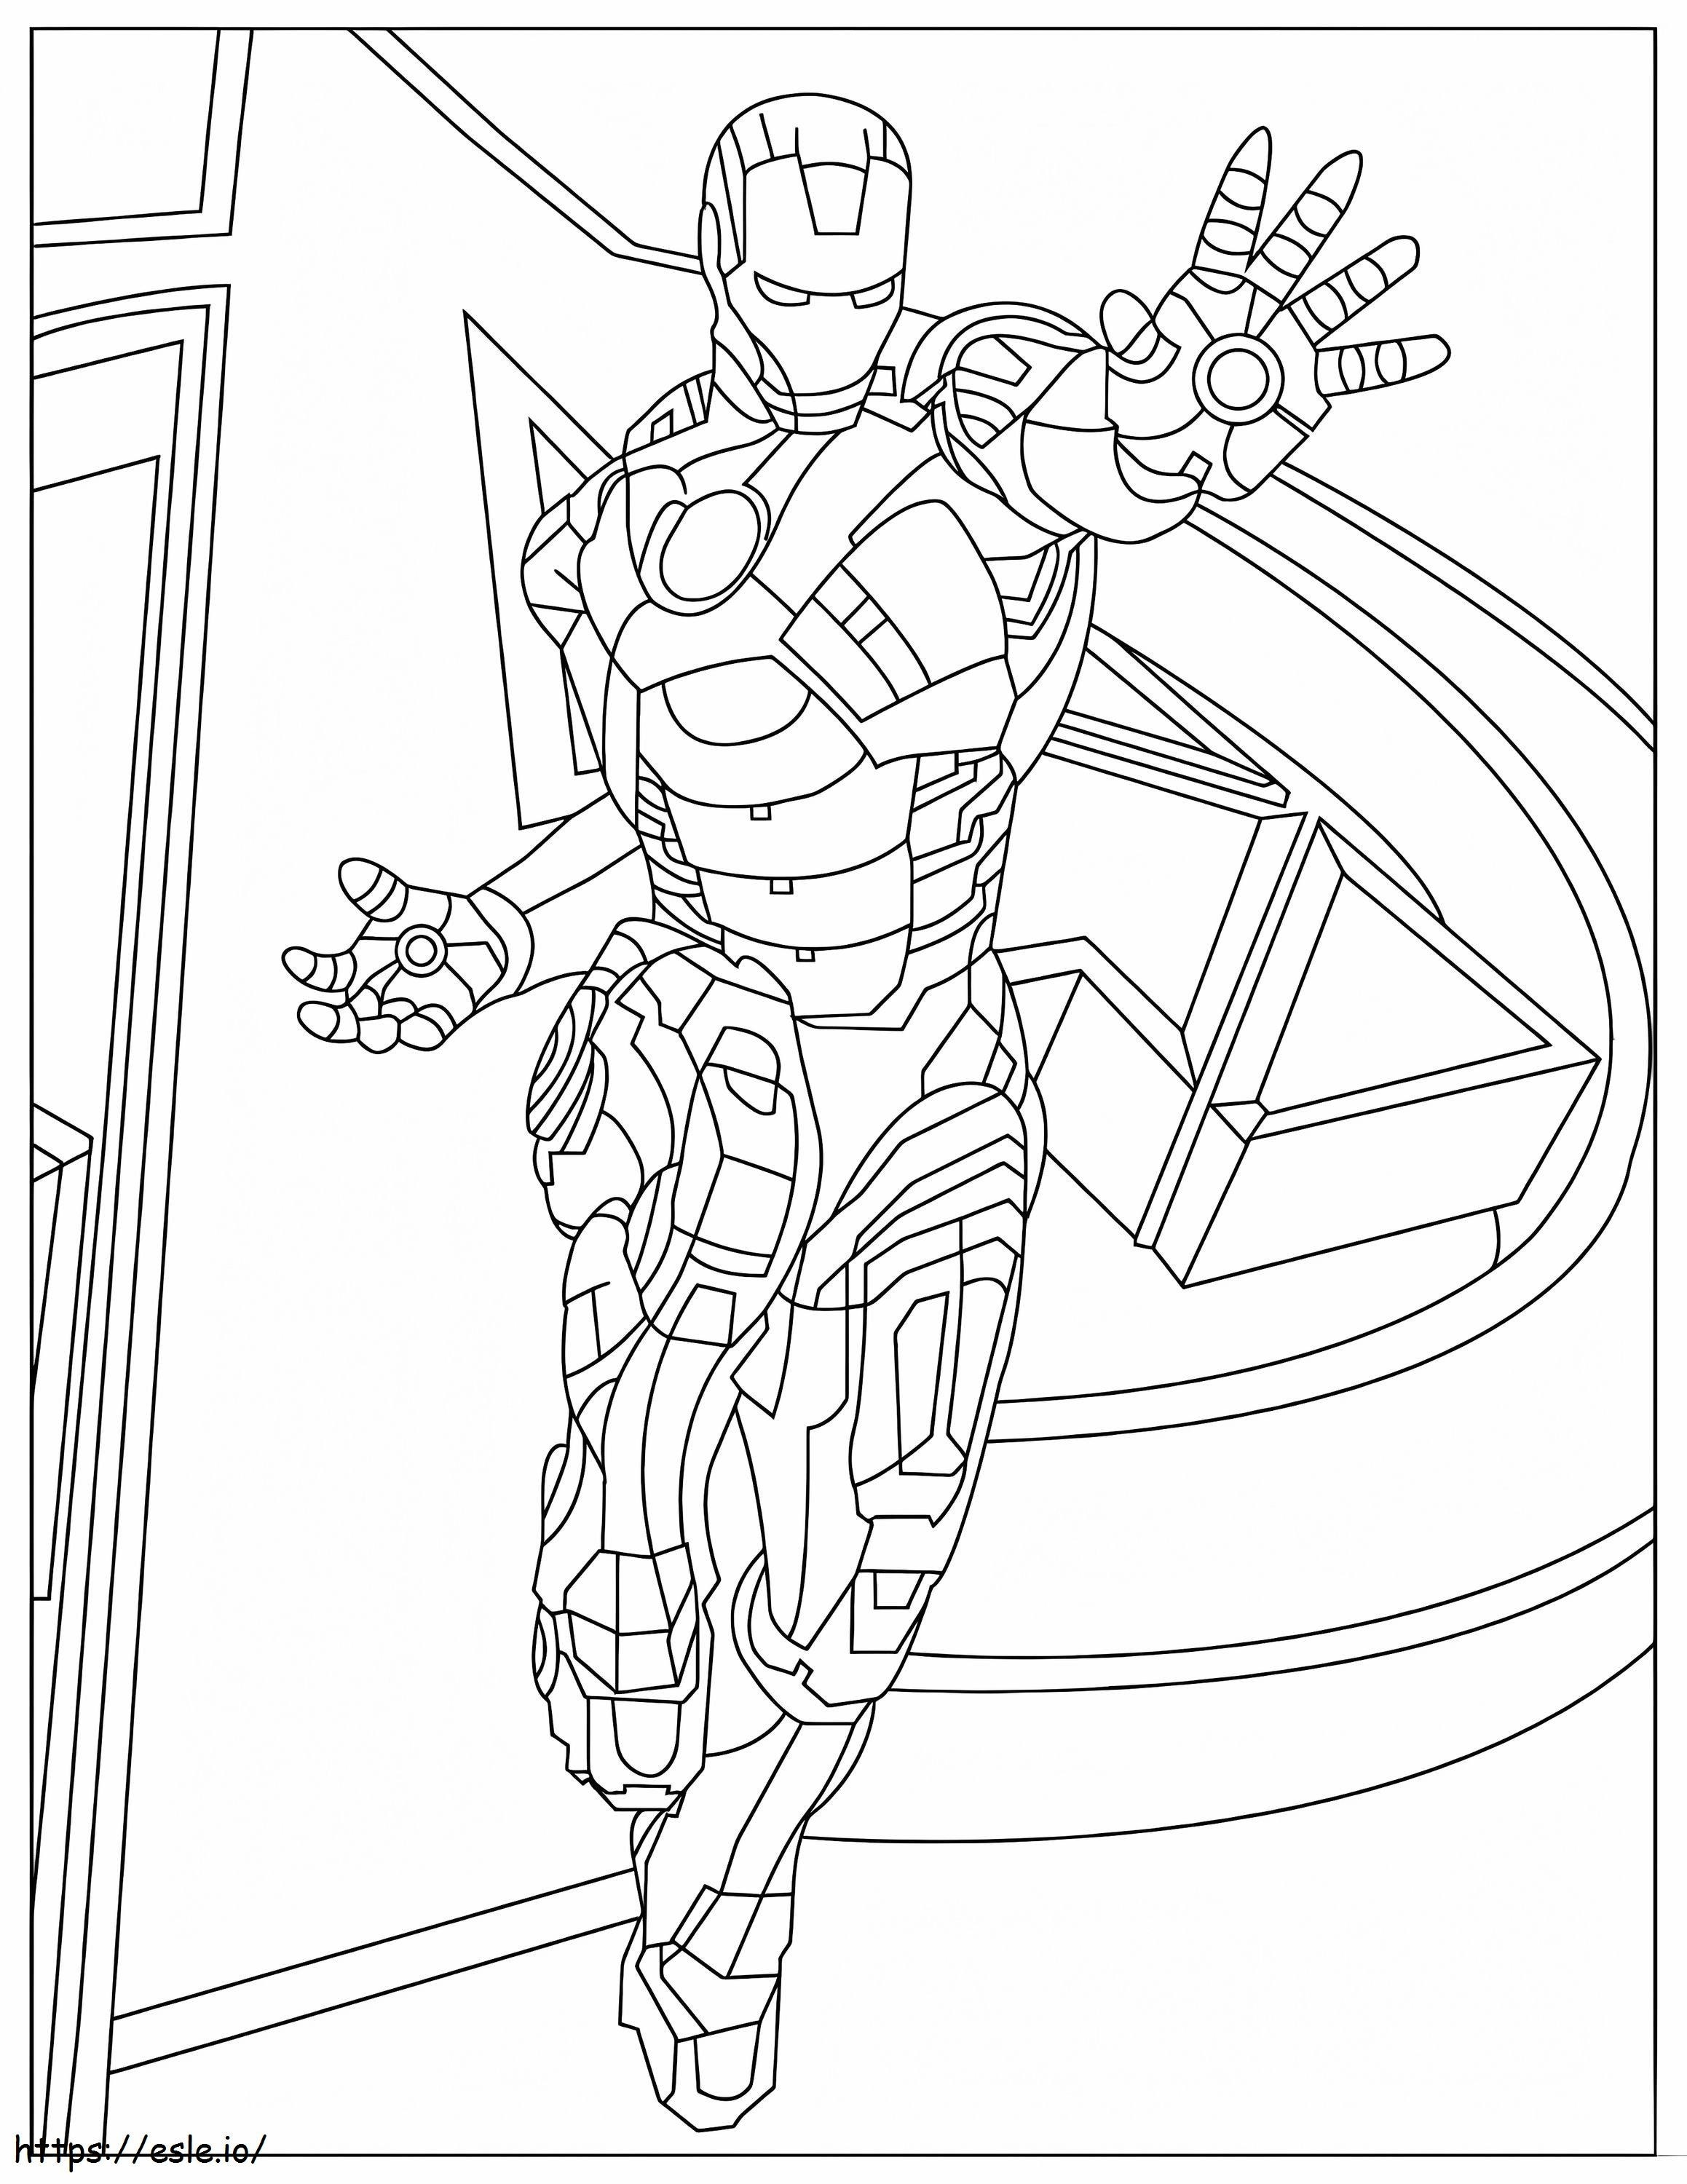 Coloriage Ironman et Avengers à imprimer dessin